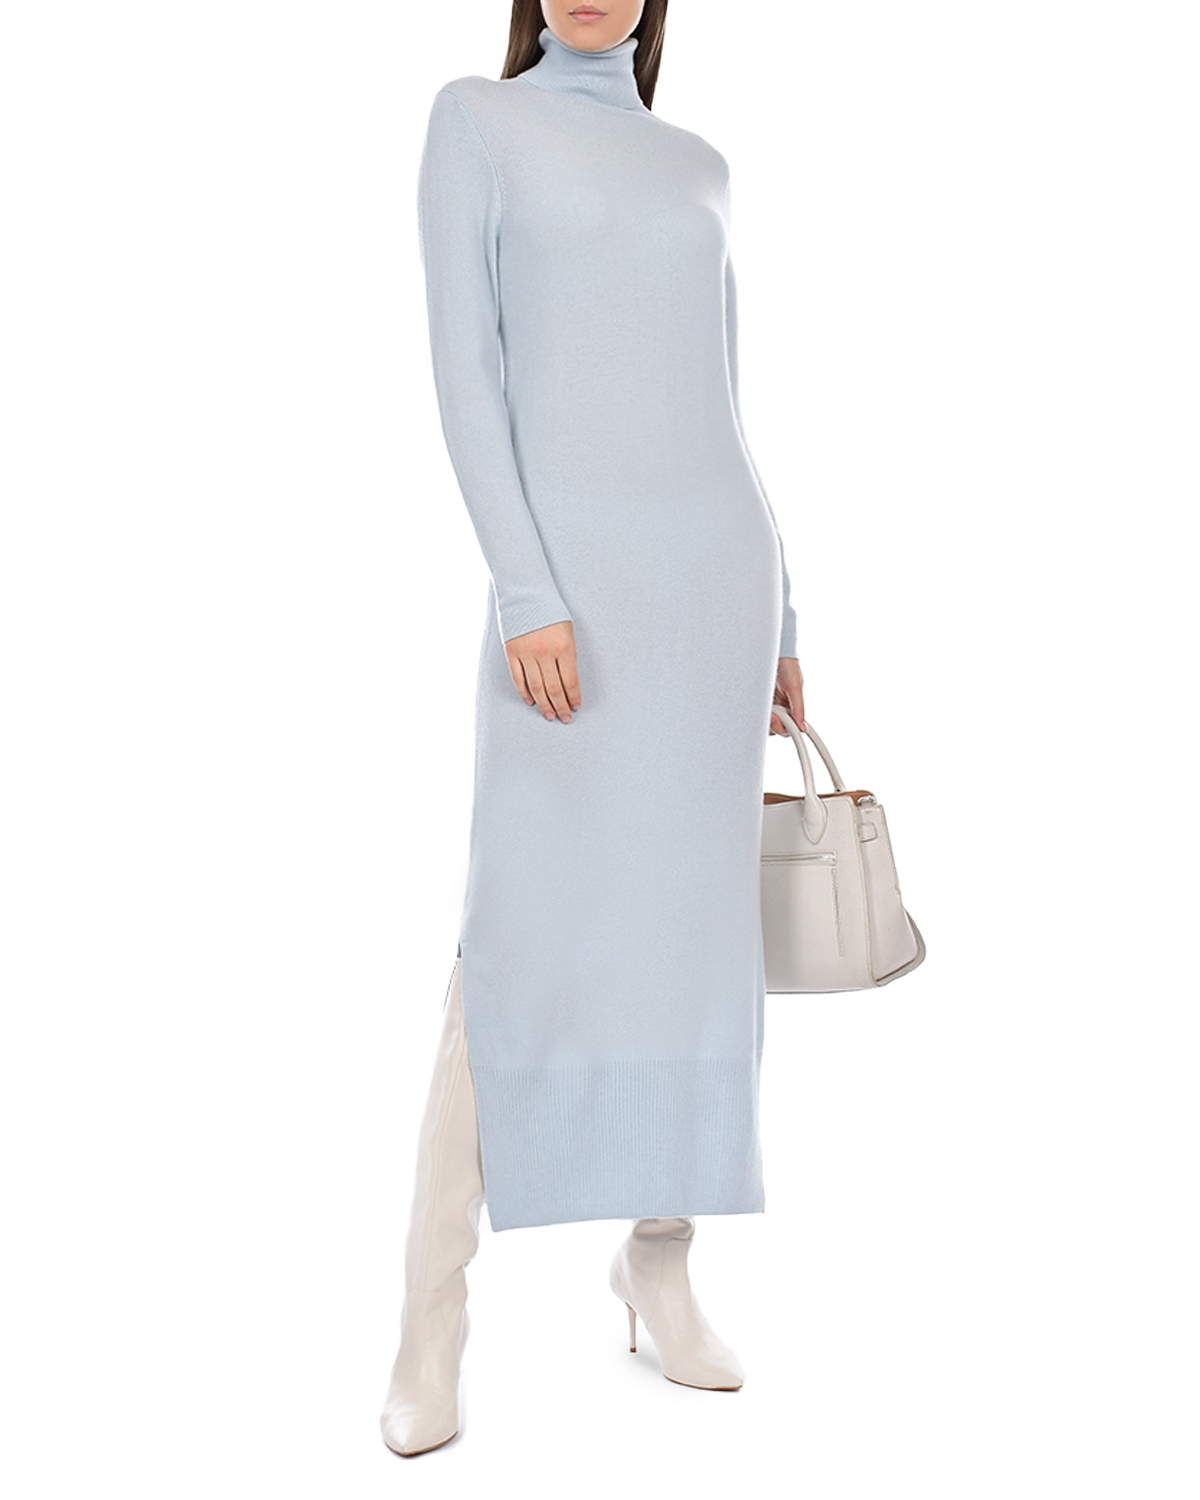 Голубое платье из кашемира Allude, размер 44, цвет голубой - фото 2